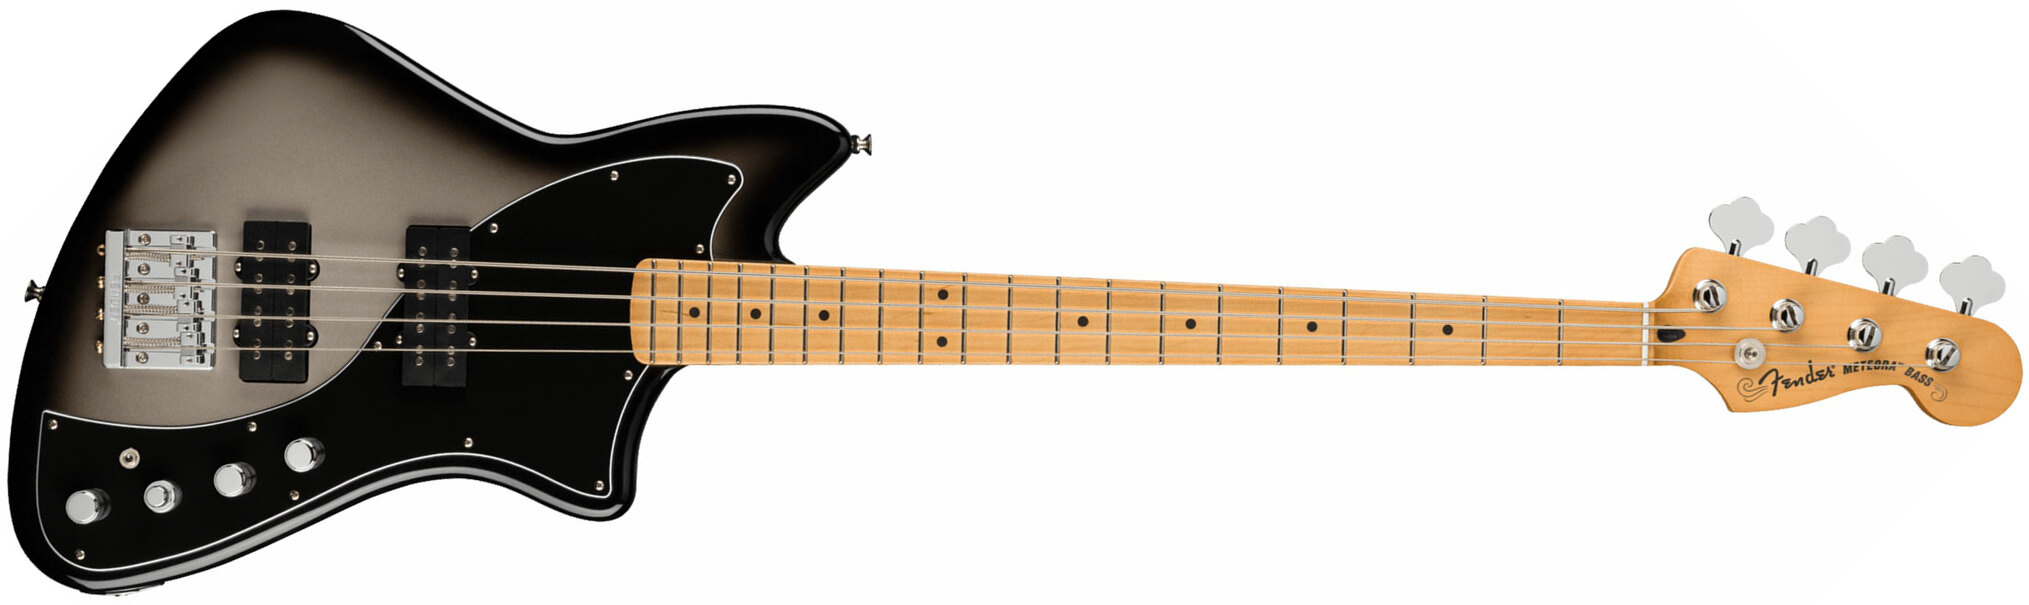 Fender Meteora Bass Active Player Plus Mex Mn - Silver Burst - Bajo eléctrico de cuerpo sólido - Main picture